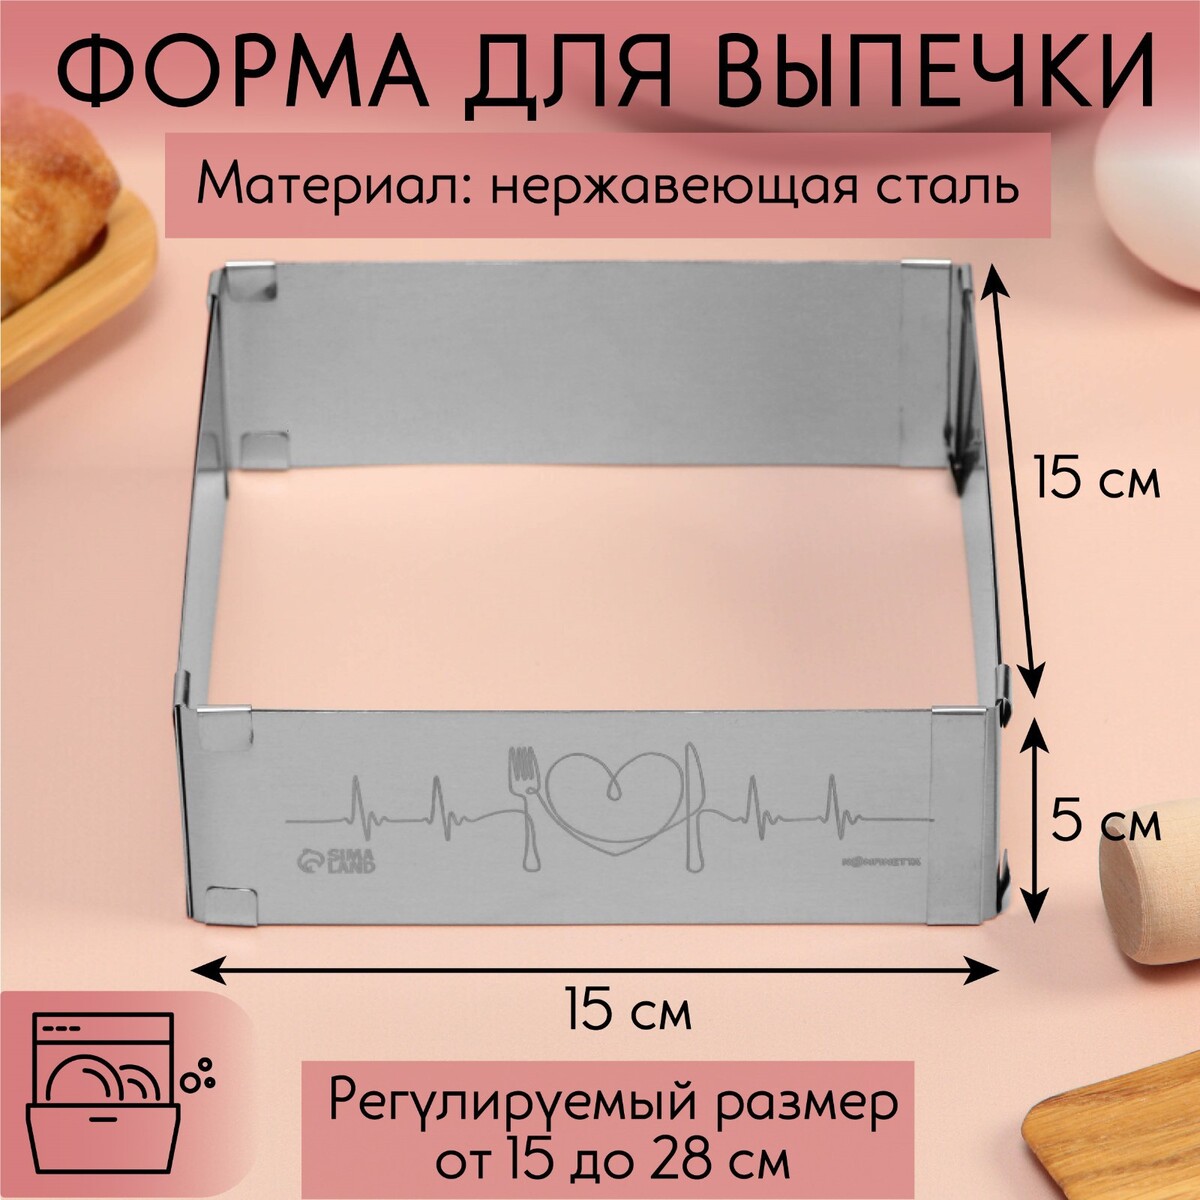 Форма для выпечки прямоугольная с регулировкой размера love, h-5 см, 15x15 - 28x28 см форма для запекания прямоугольная borcam 1 3 0 9 л 28 6×16×5 см с крышкой